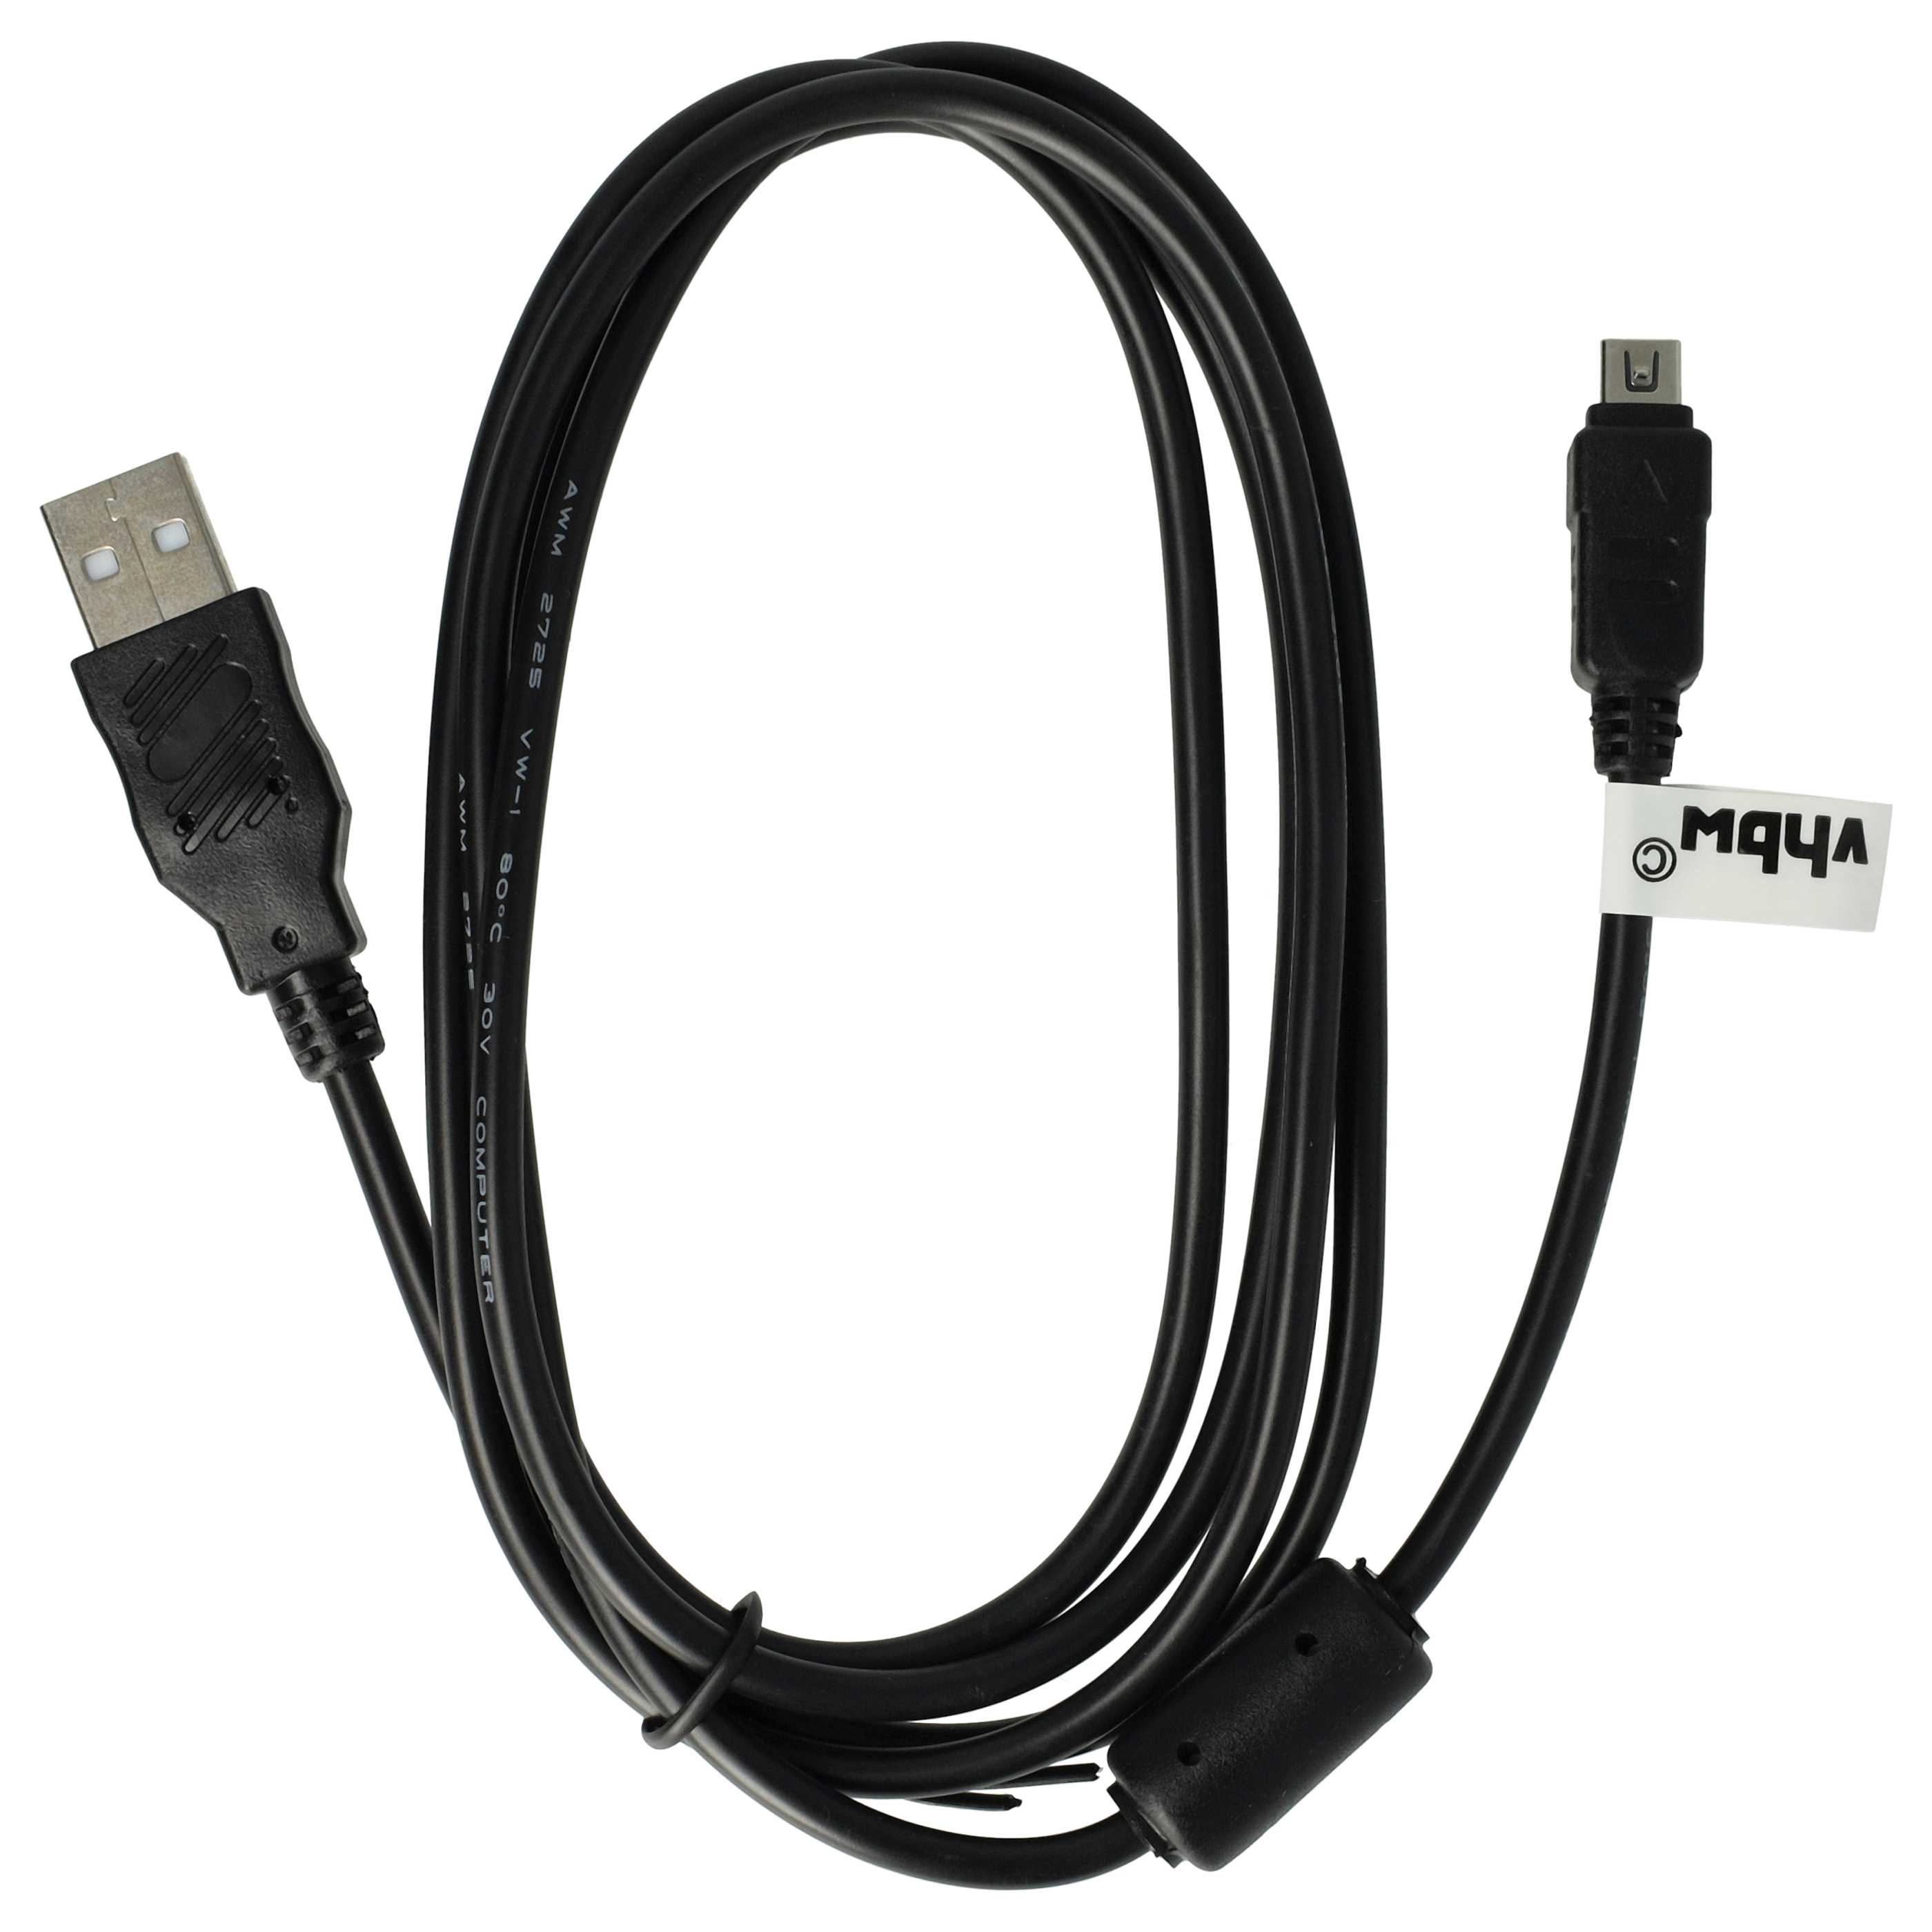 USB Data Cable replaces Olympus CB-USB6, CB-USB5, CB-USB8 for Olympus Camera - 150 cm